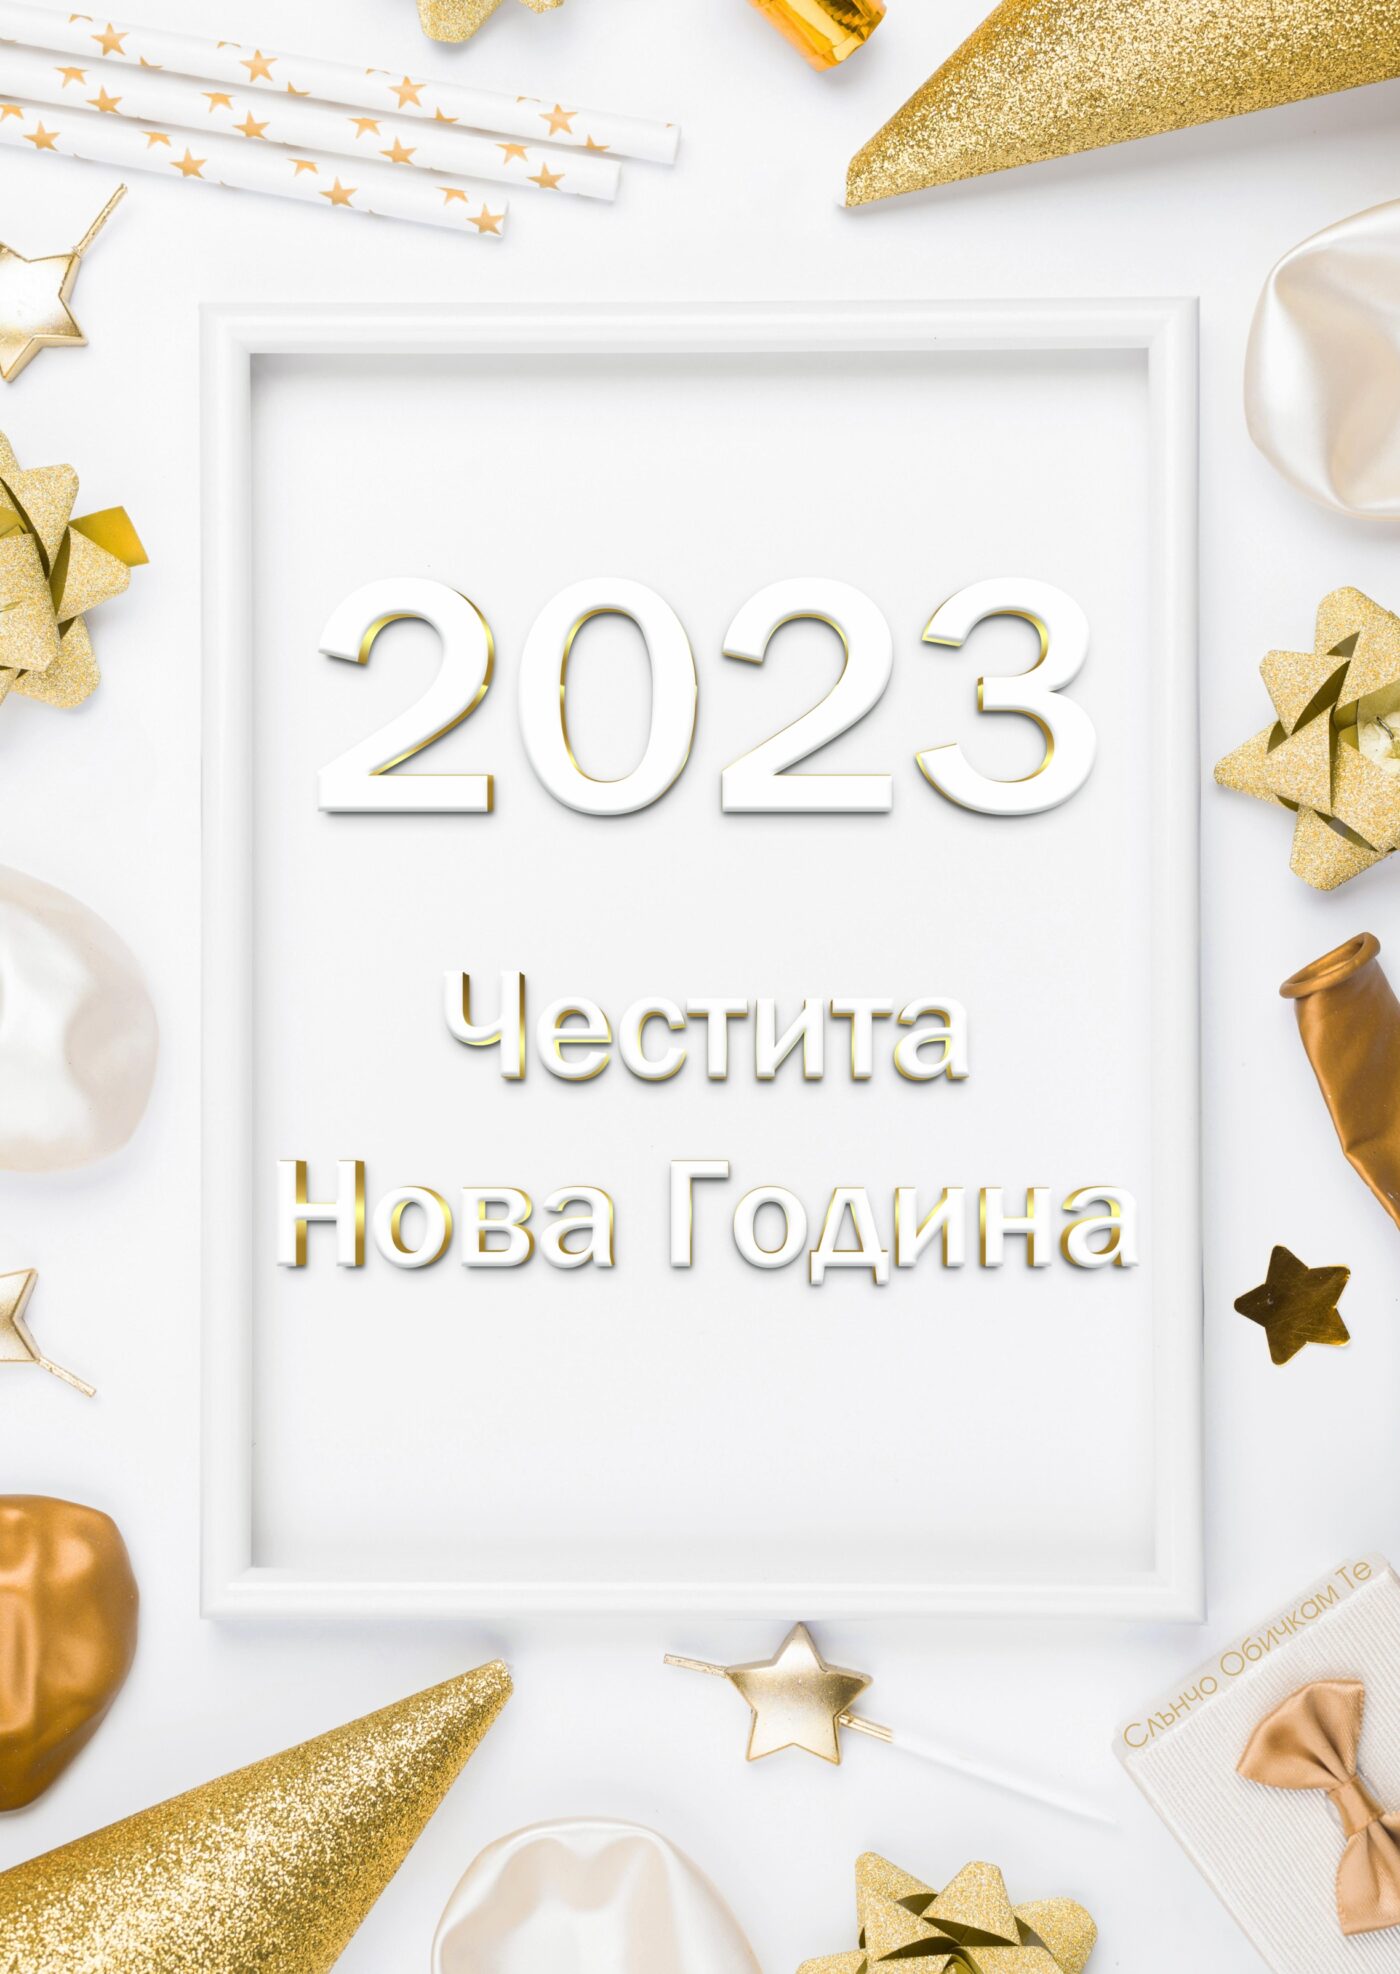 Честита Нова година 2023 на бял фон - Новогодишни картички, Нова година 2023, честита нова година, картички за нова година 2023, пожелания за нова година, слънчо обичкам те